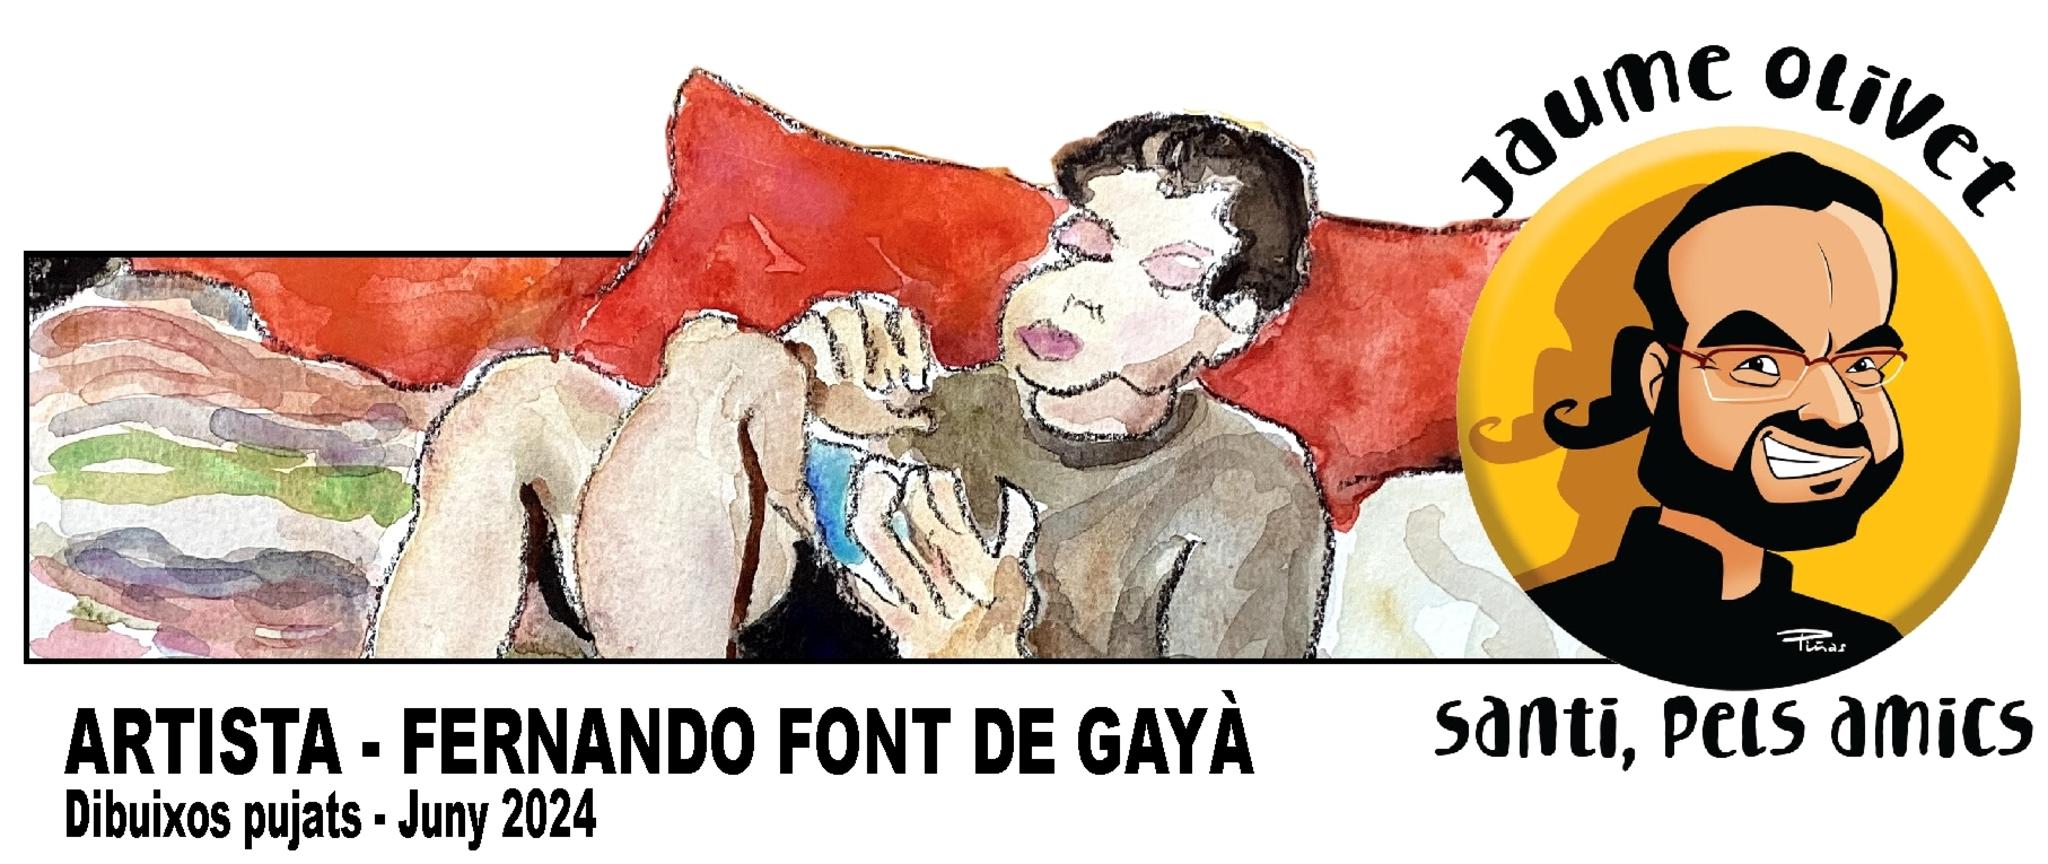  Fernando Font de Gay 2024